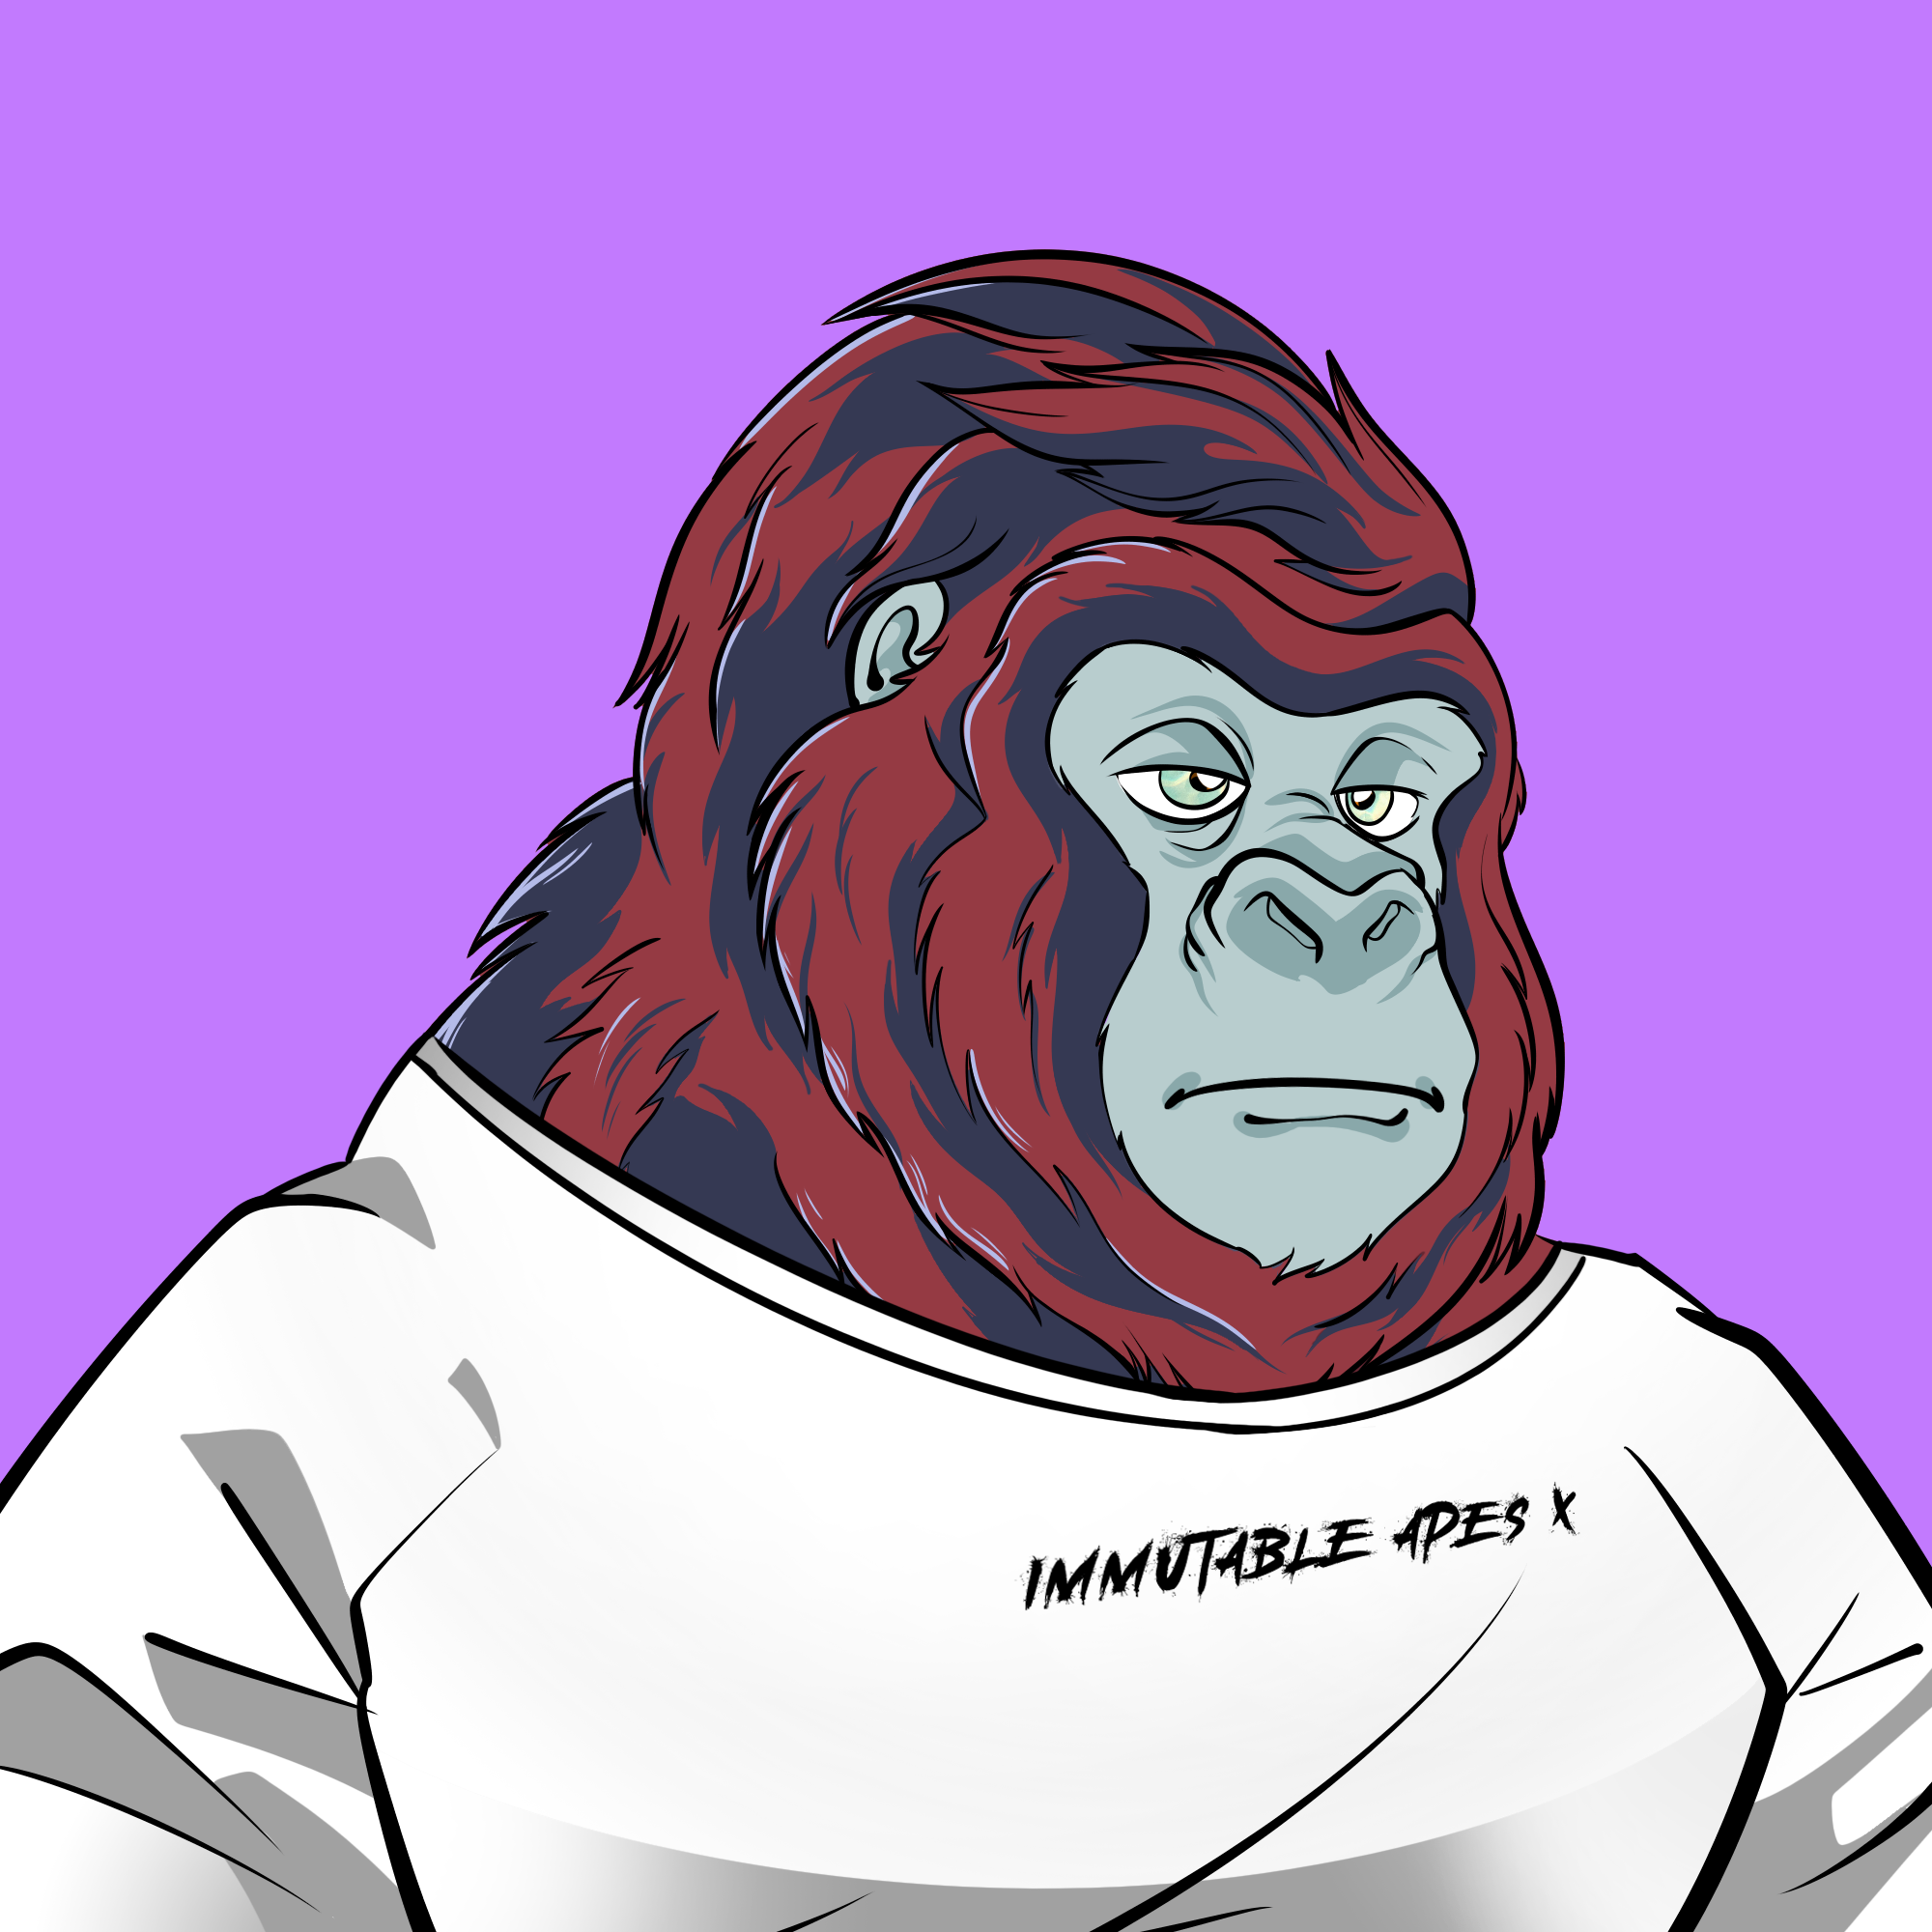 Ape#4107